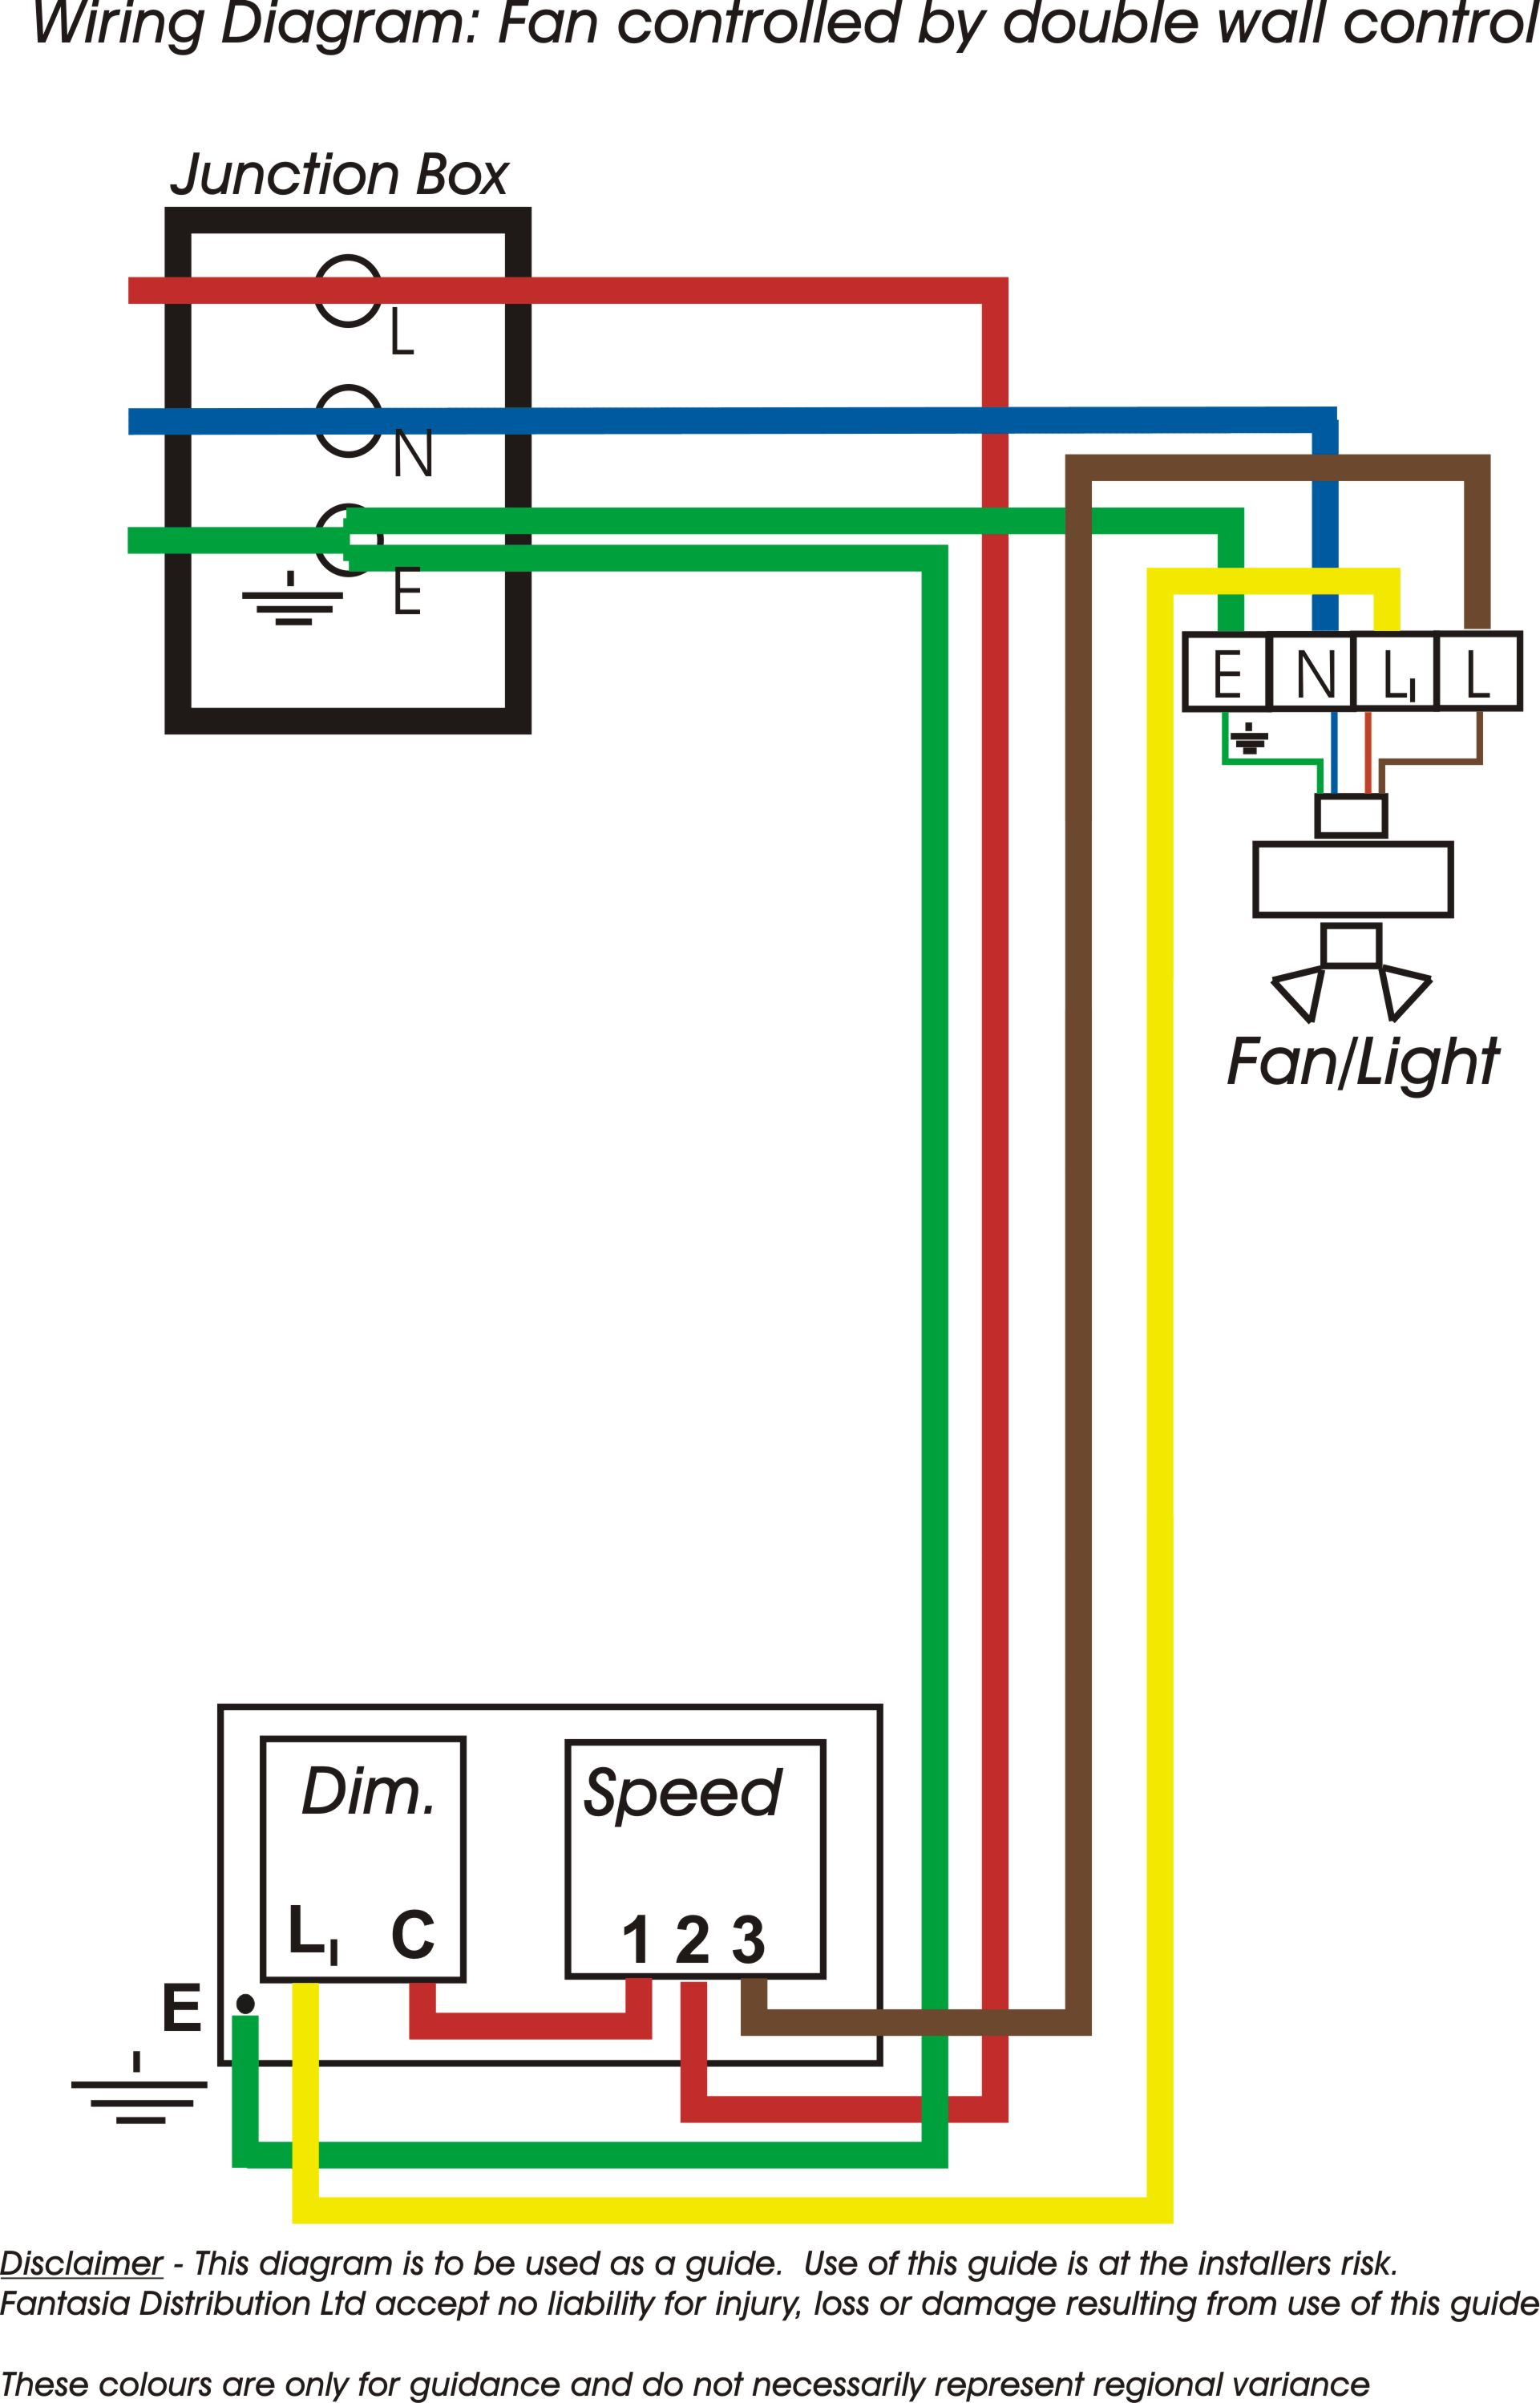 Wiring Diagrams Best Of Ceiling Fan Wire Diagram - Wiring Diagrams - Fan Wiring Diagram